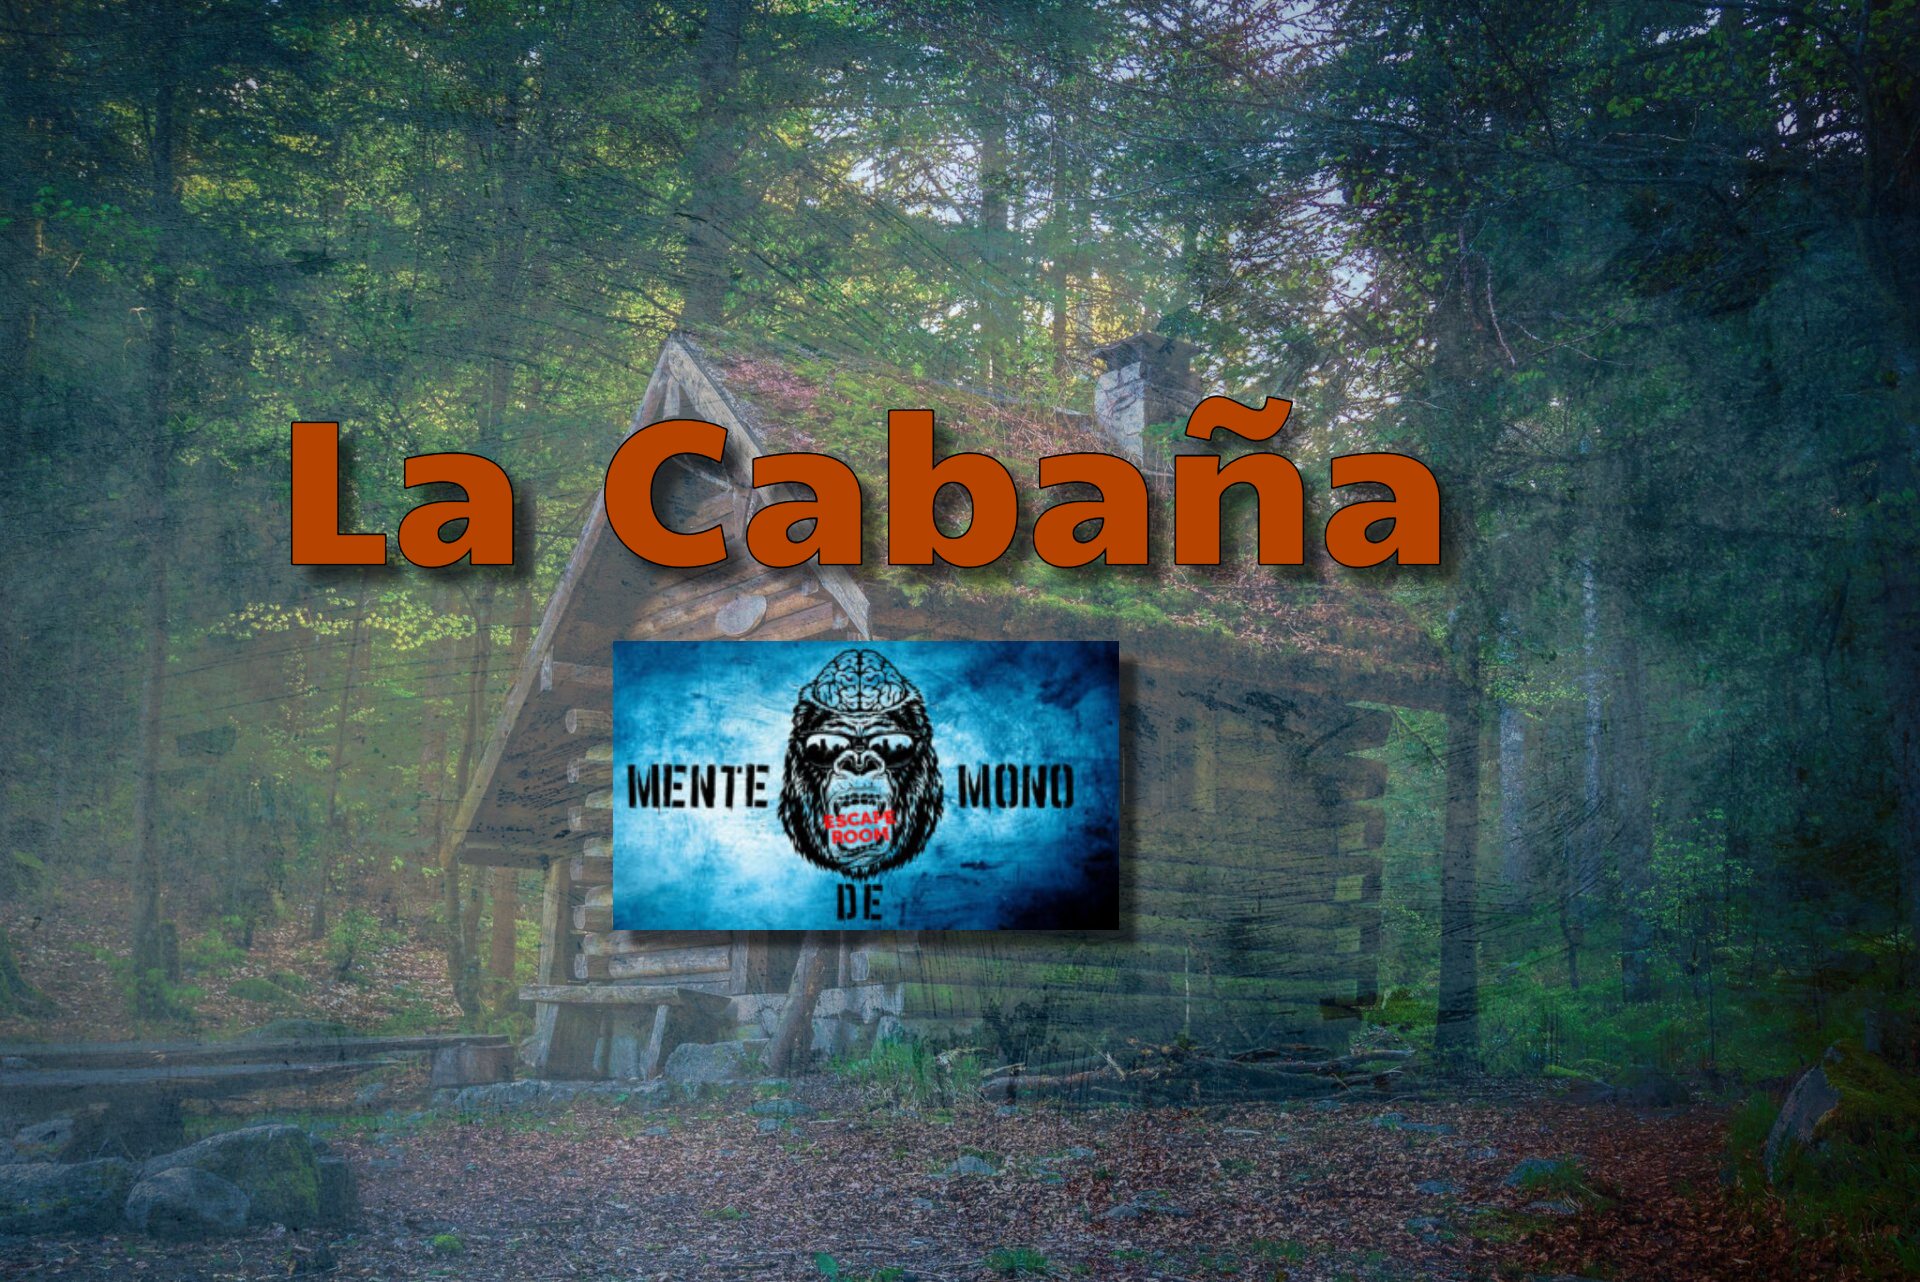 La Cabaña - Mente de Mono (Velilla de San Antonio,Madrid) - Review Escape Room